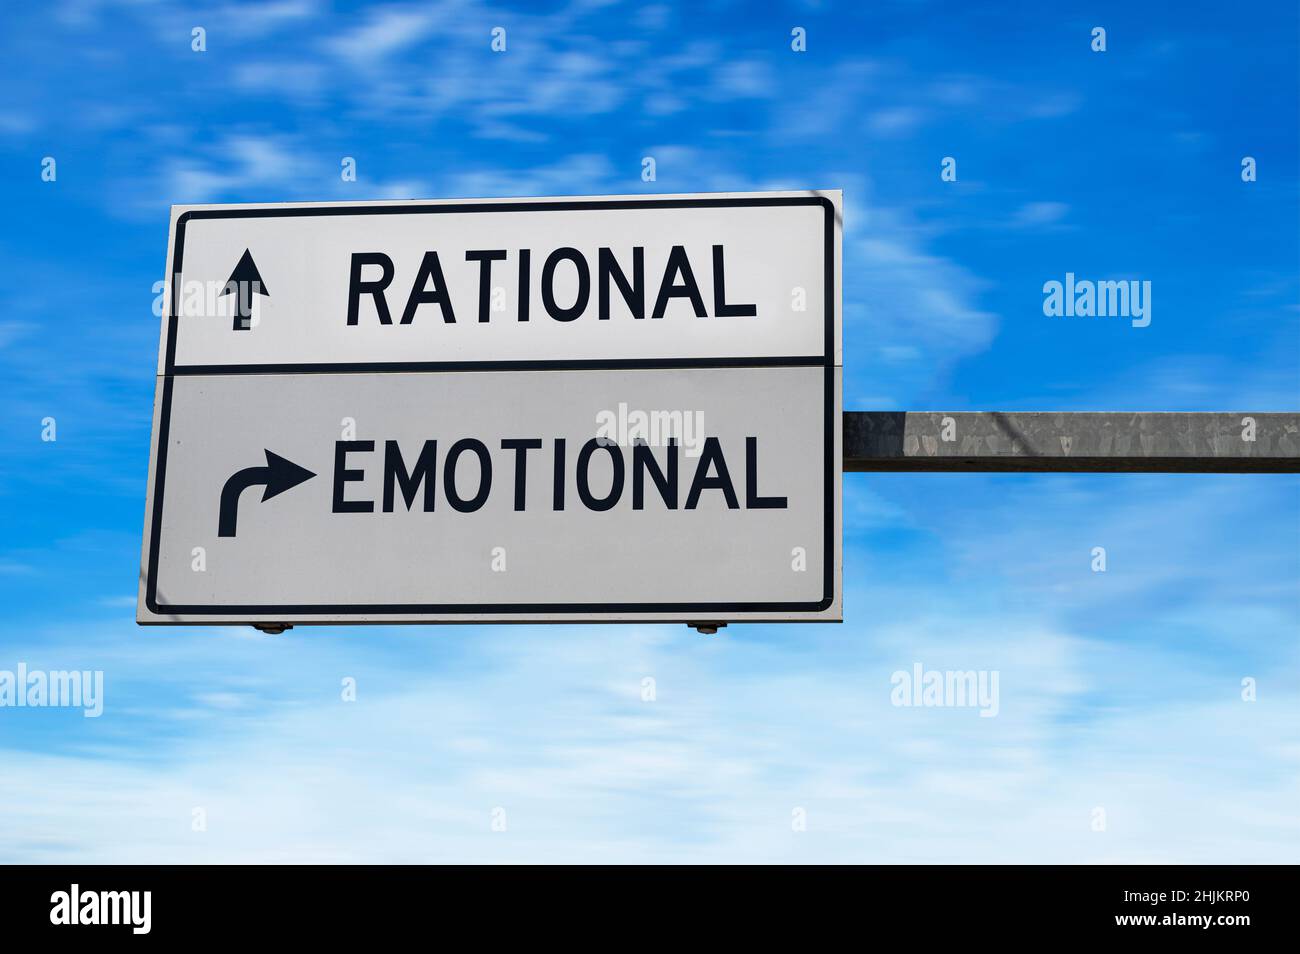 Straßenschild mit Worten rational und emotional. Weiße zwei Straßenschilder mit Pfeil auf Metallmast auf blauem Himmel Hintergrund. Stockfoto